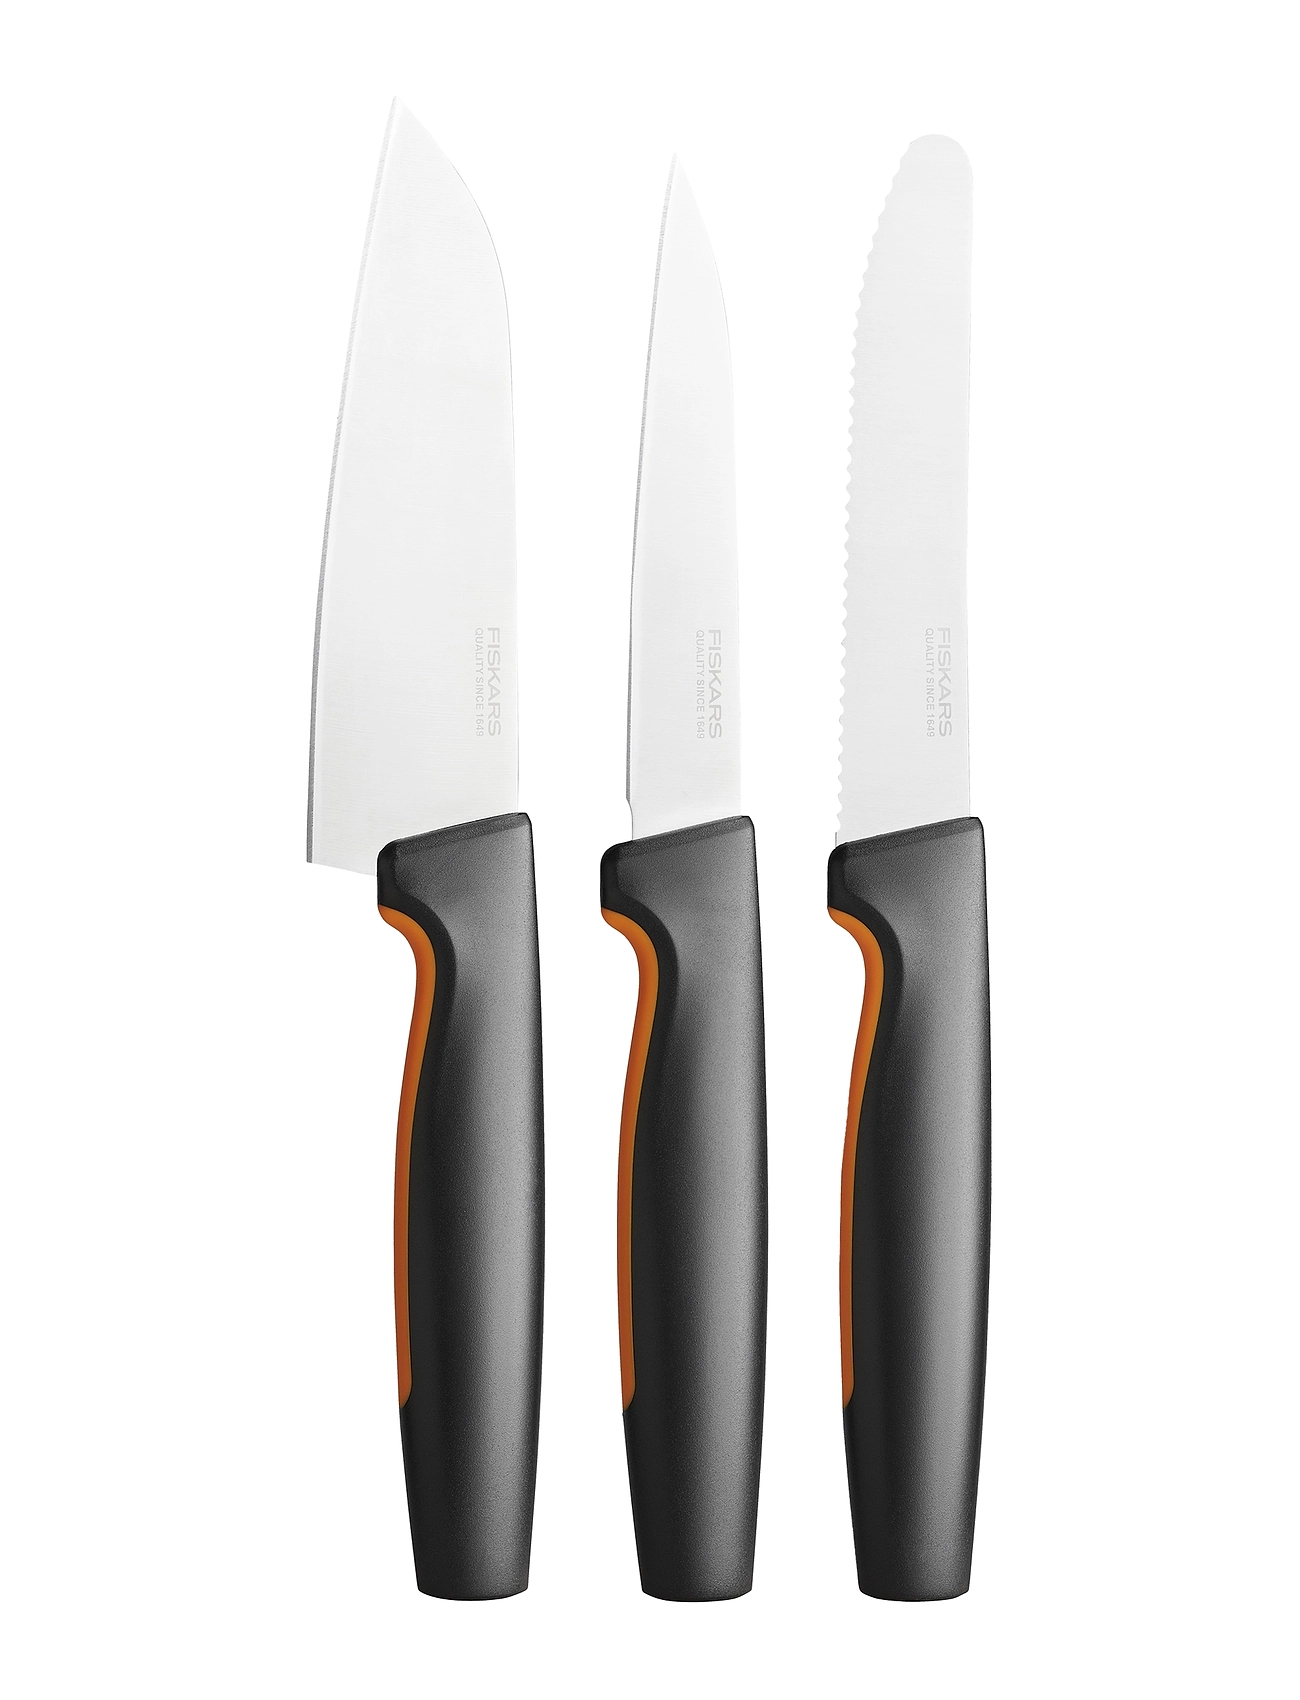 Ff Favorite Knife Set, 3 Parts Home Kitchen Knives & Accessories Knife Sets Black Fiskars